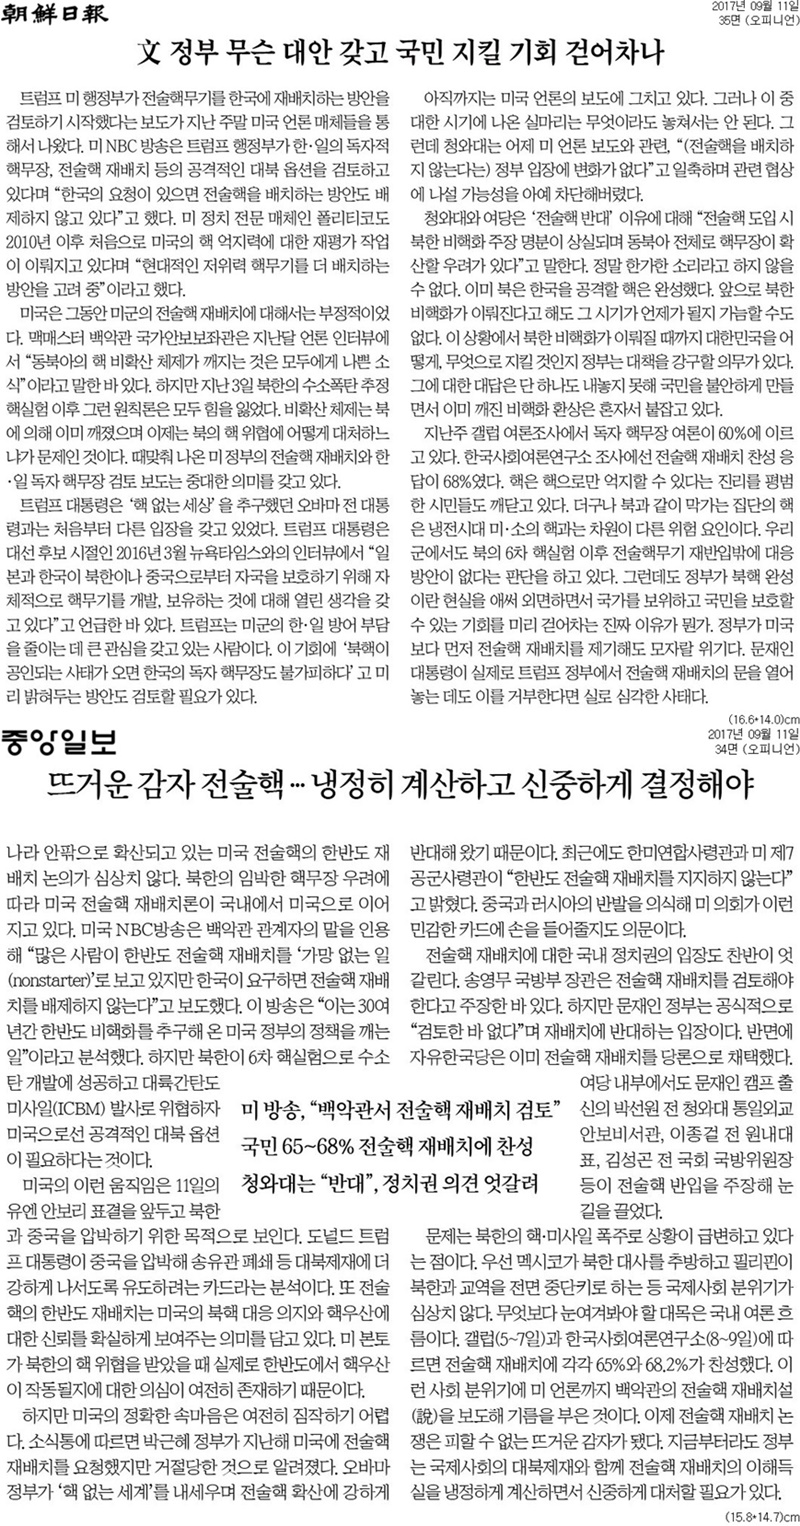 ▲ 11일 조선일보와 중앙일보의 사설.